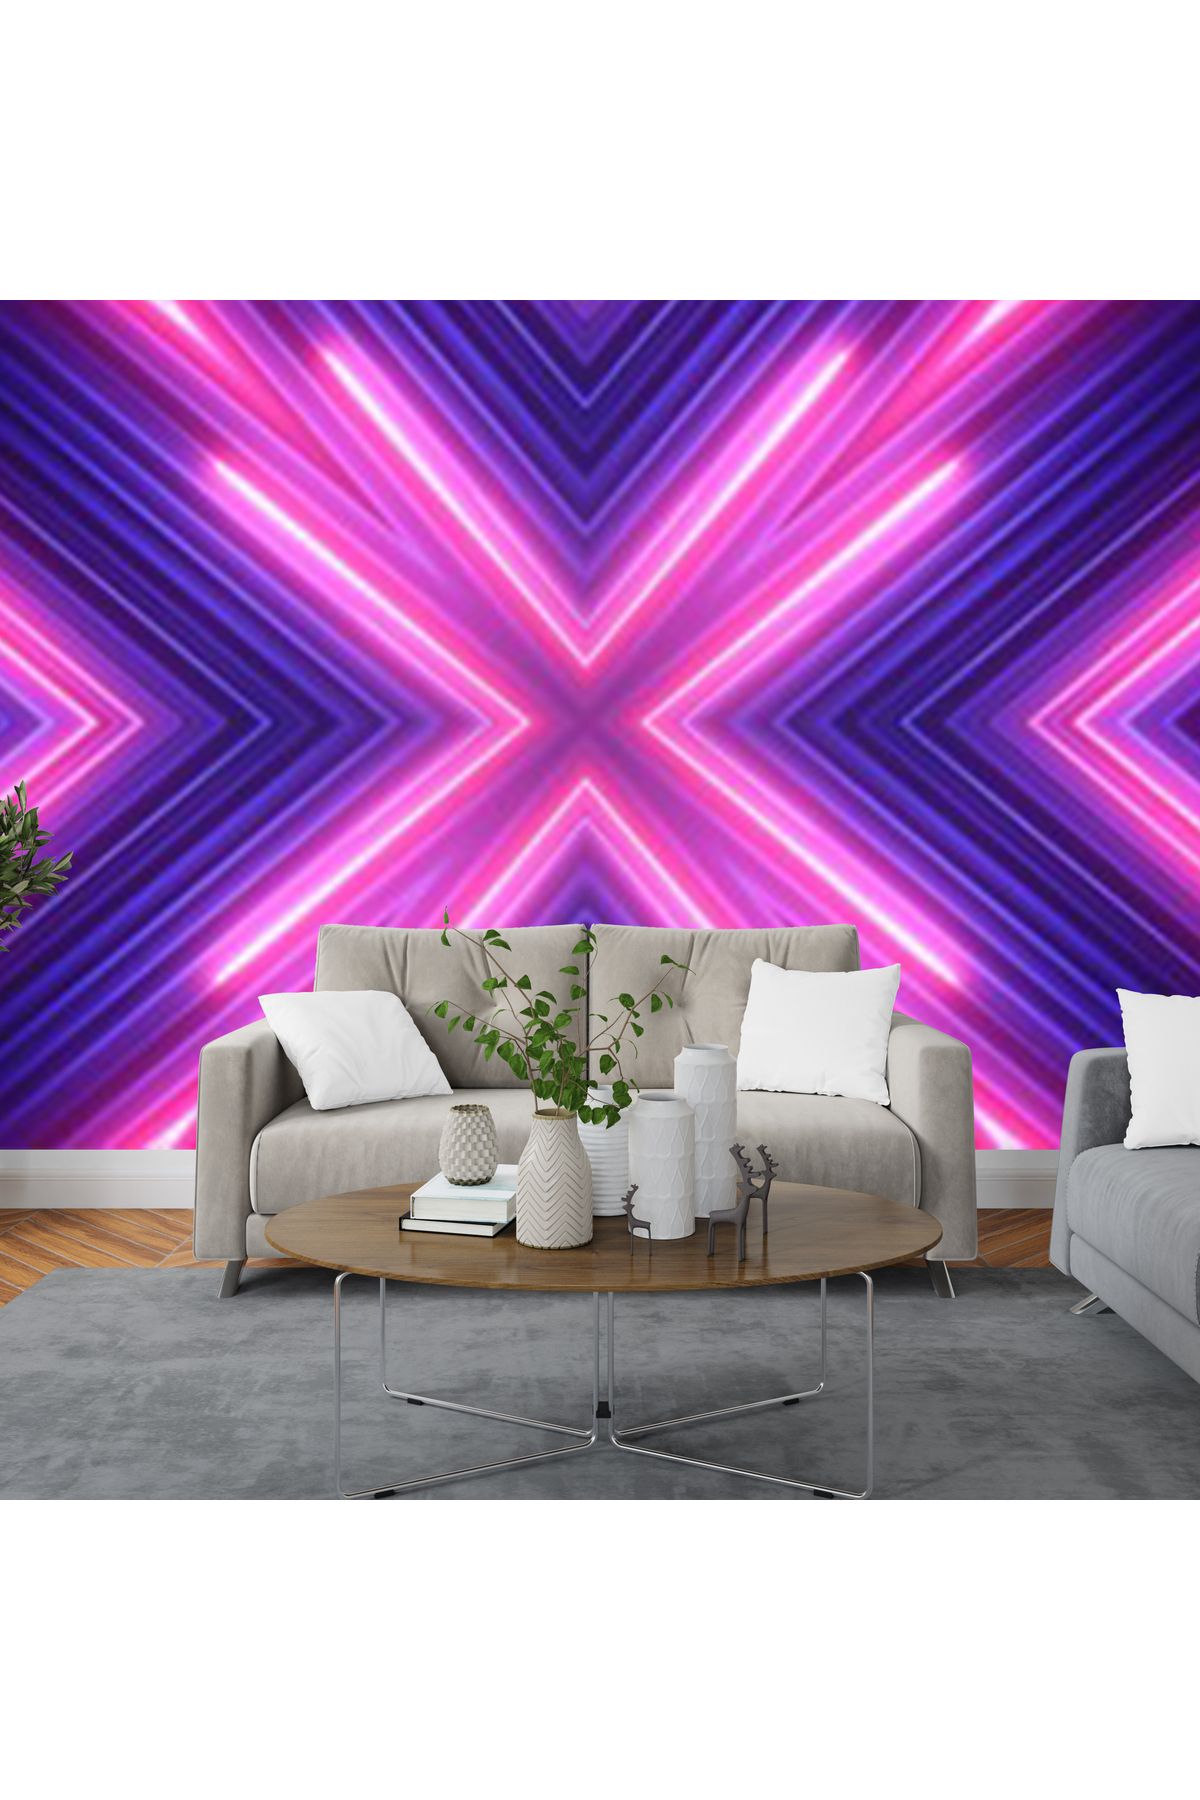 decoratico 3 Boyutlu Pembe Ve Mor Neon Işık Desenli Duvar Kağıdı